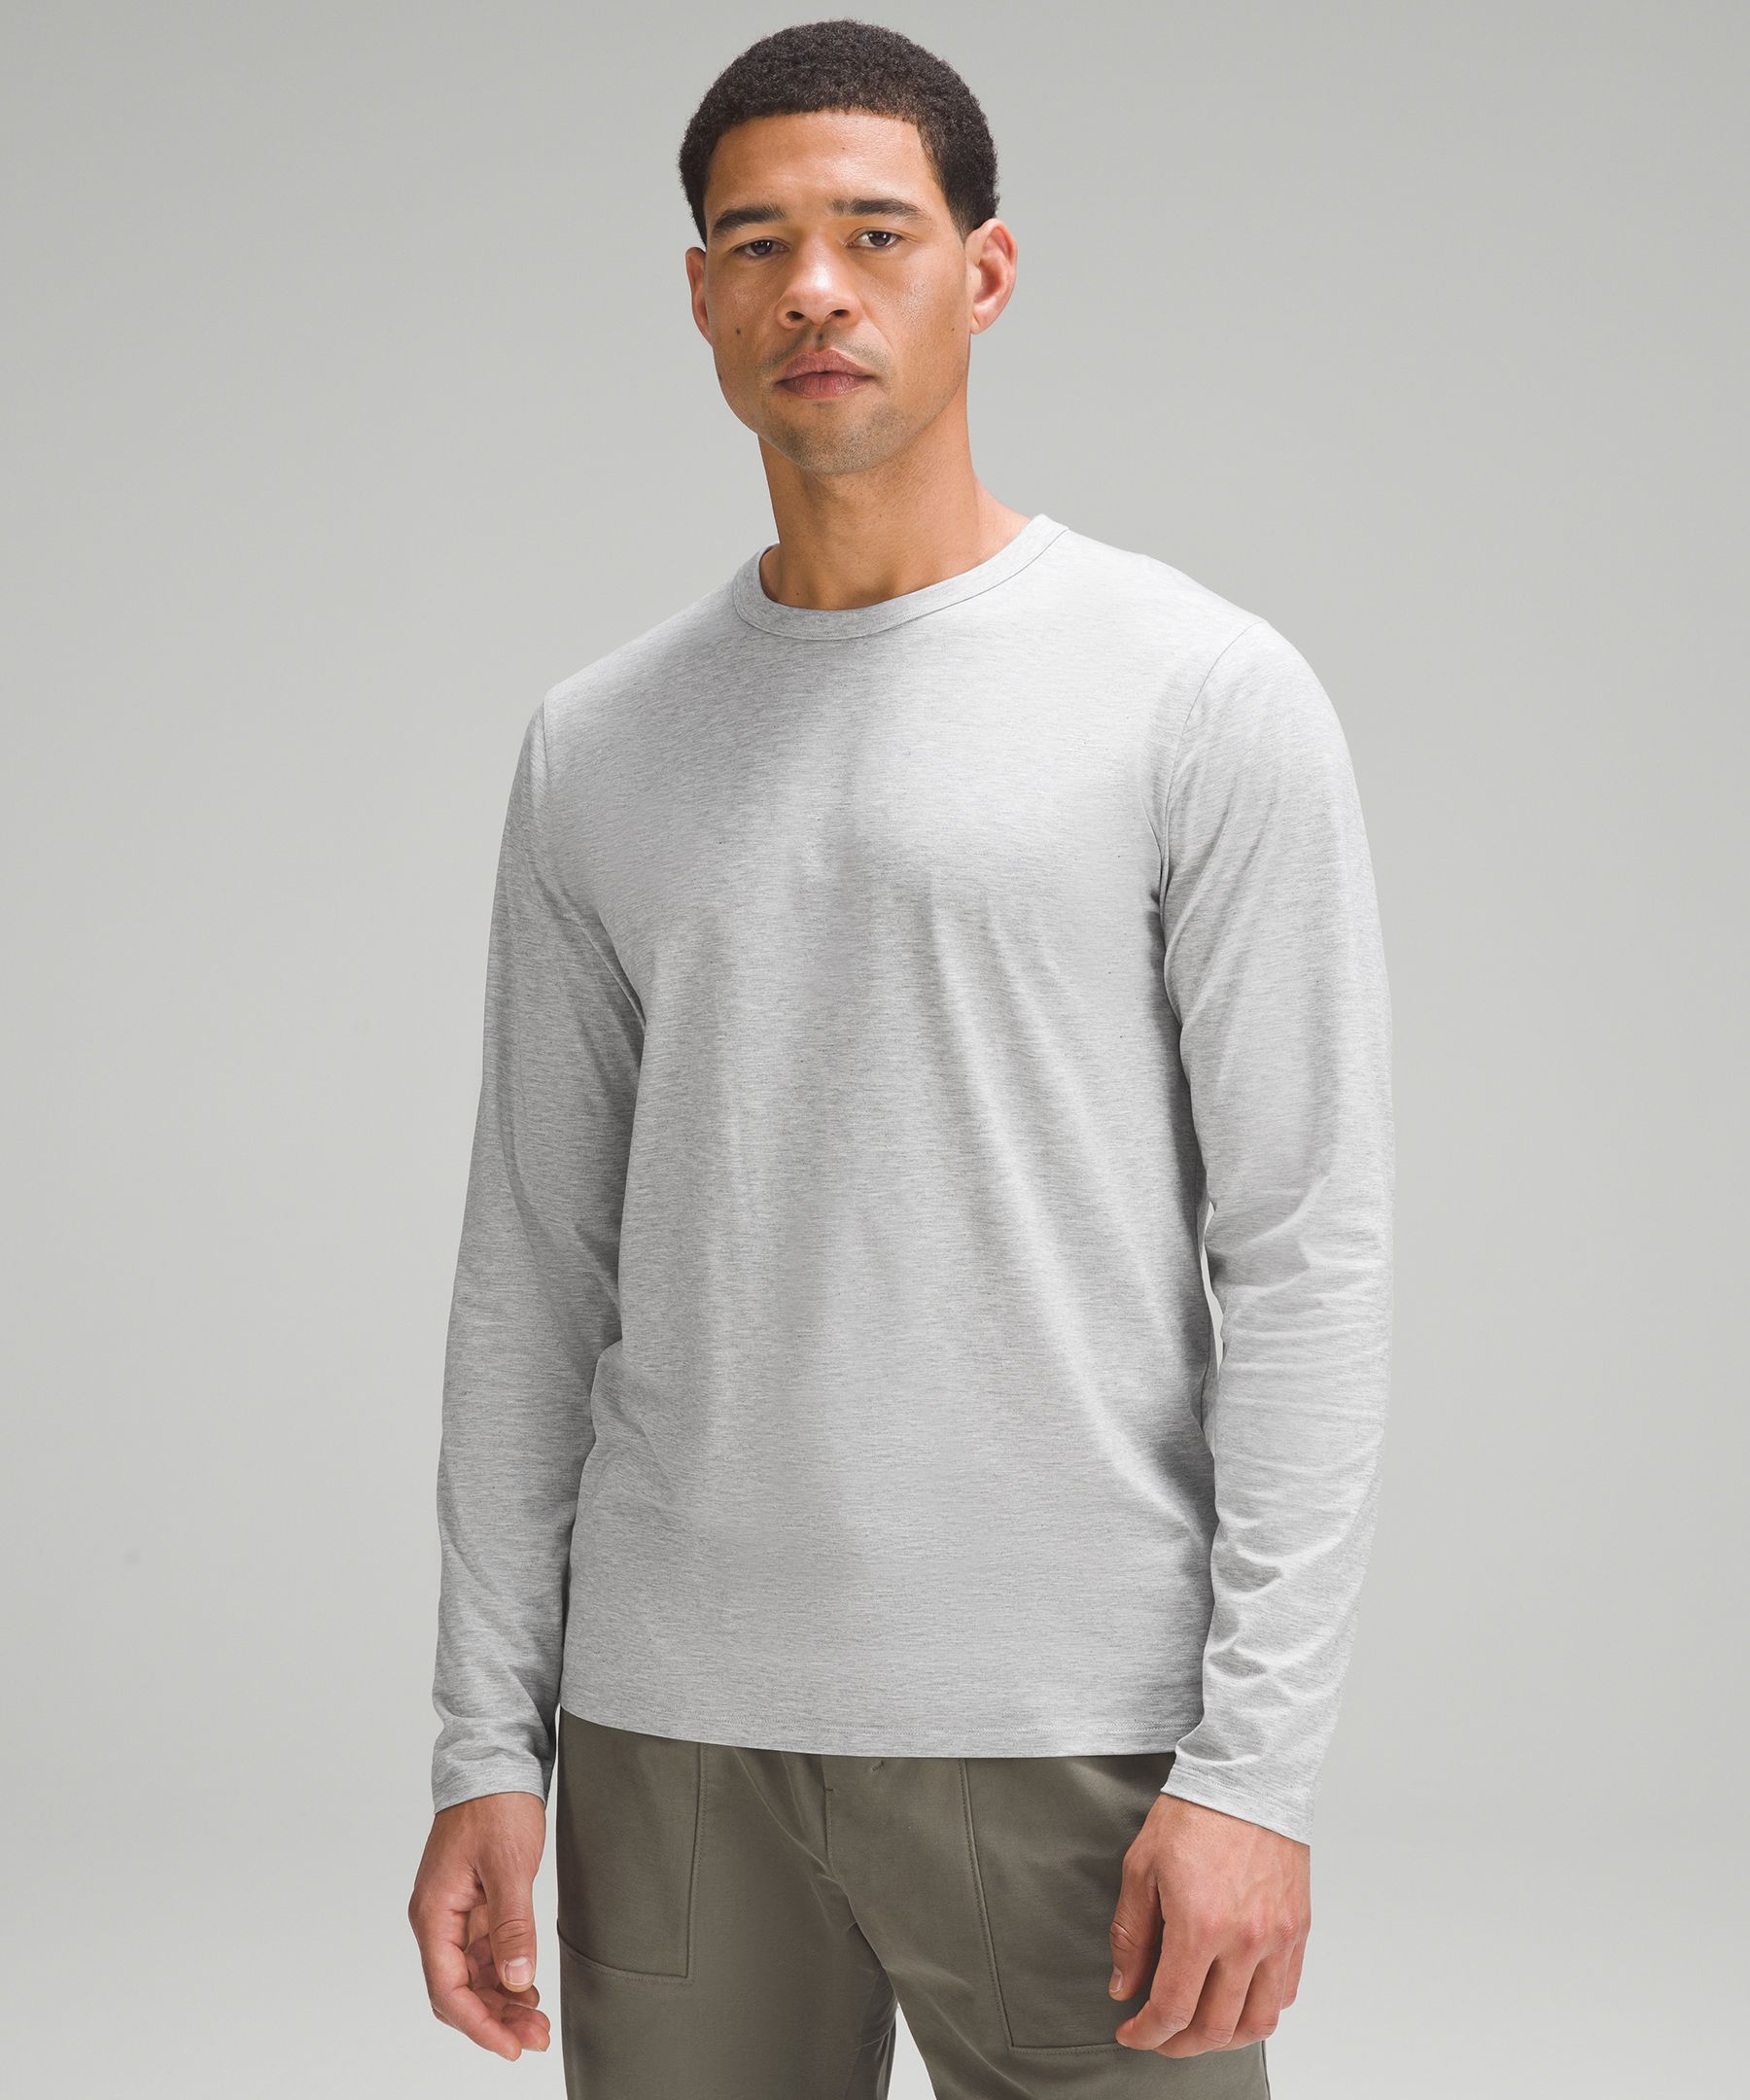 Lululemon Fundamental Long-Sleeve Shirt - White - Size XL